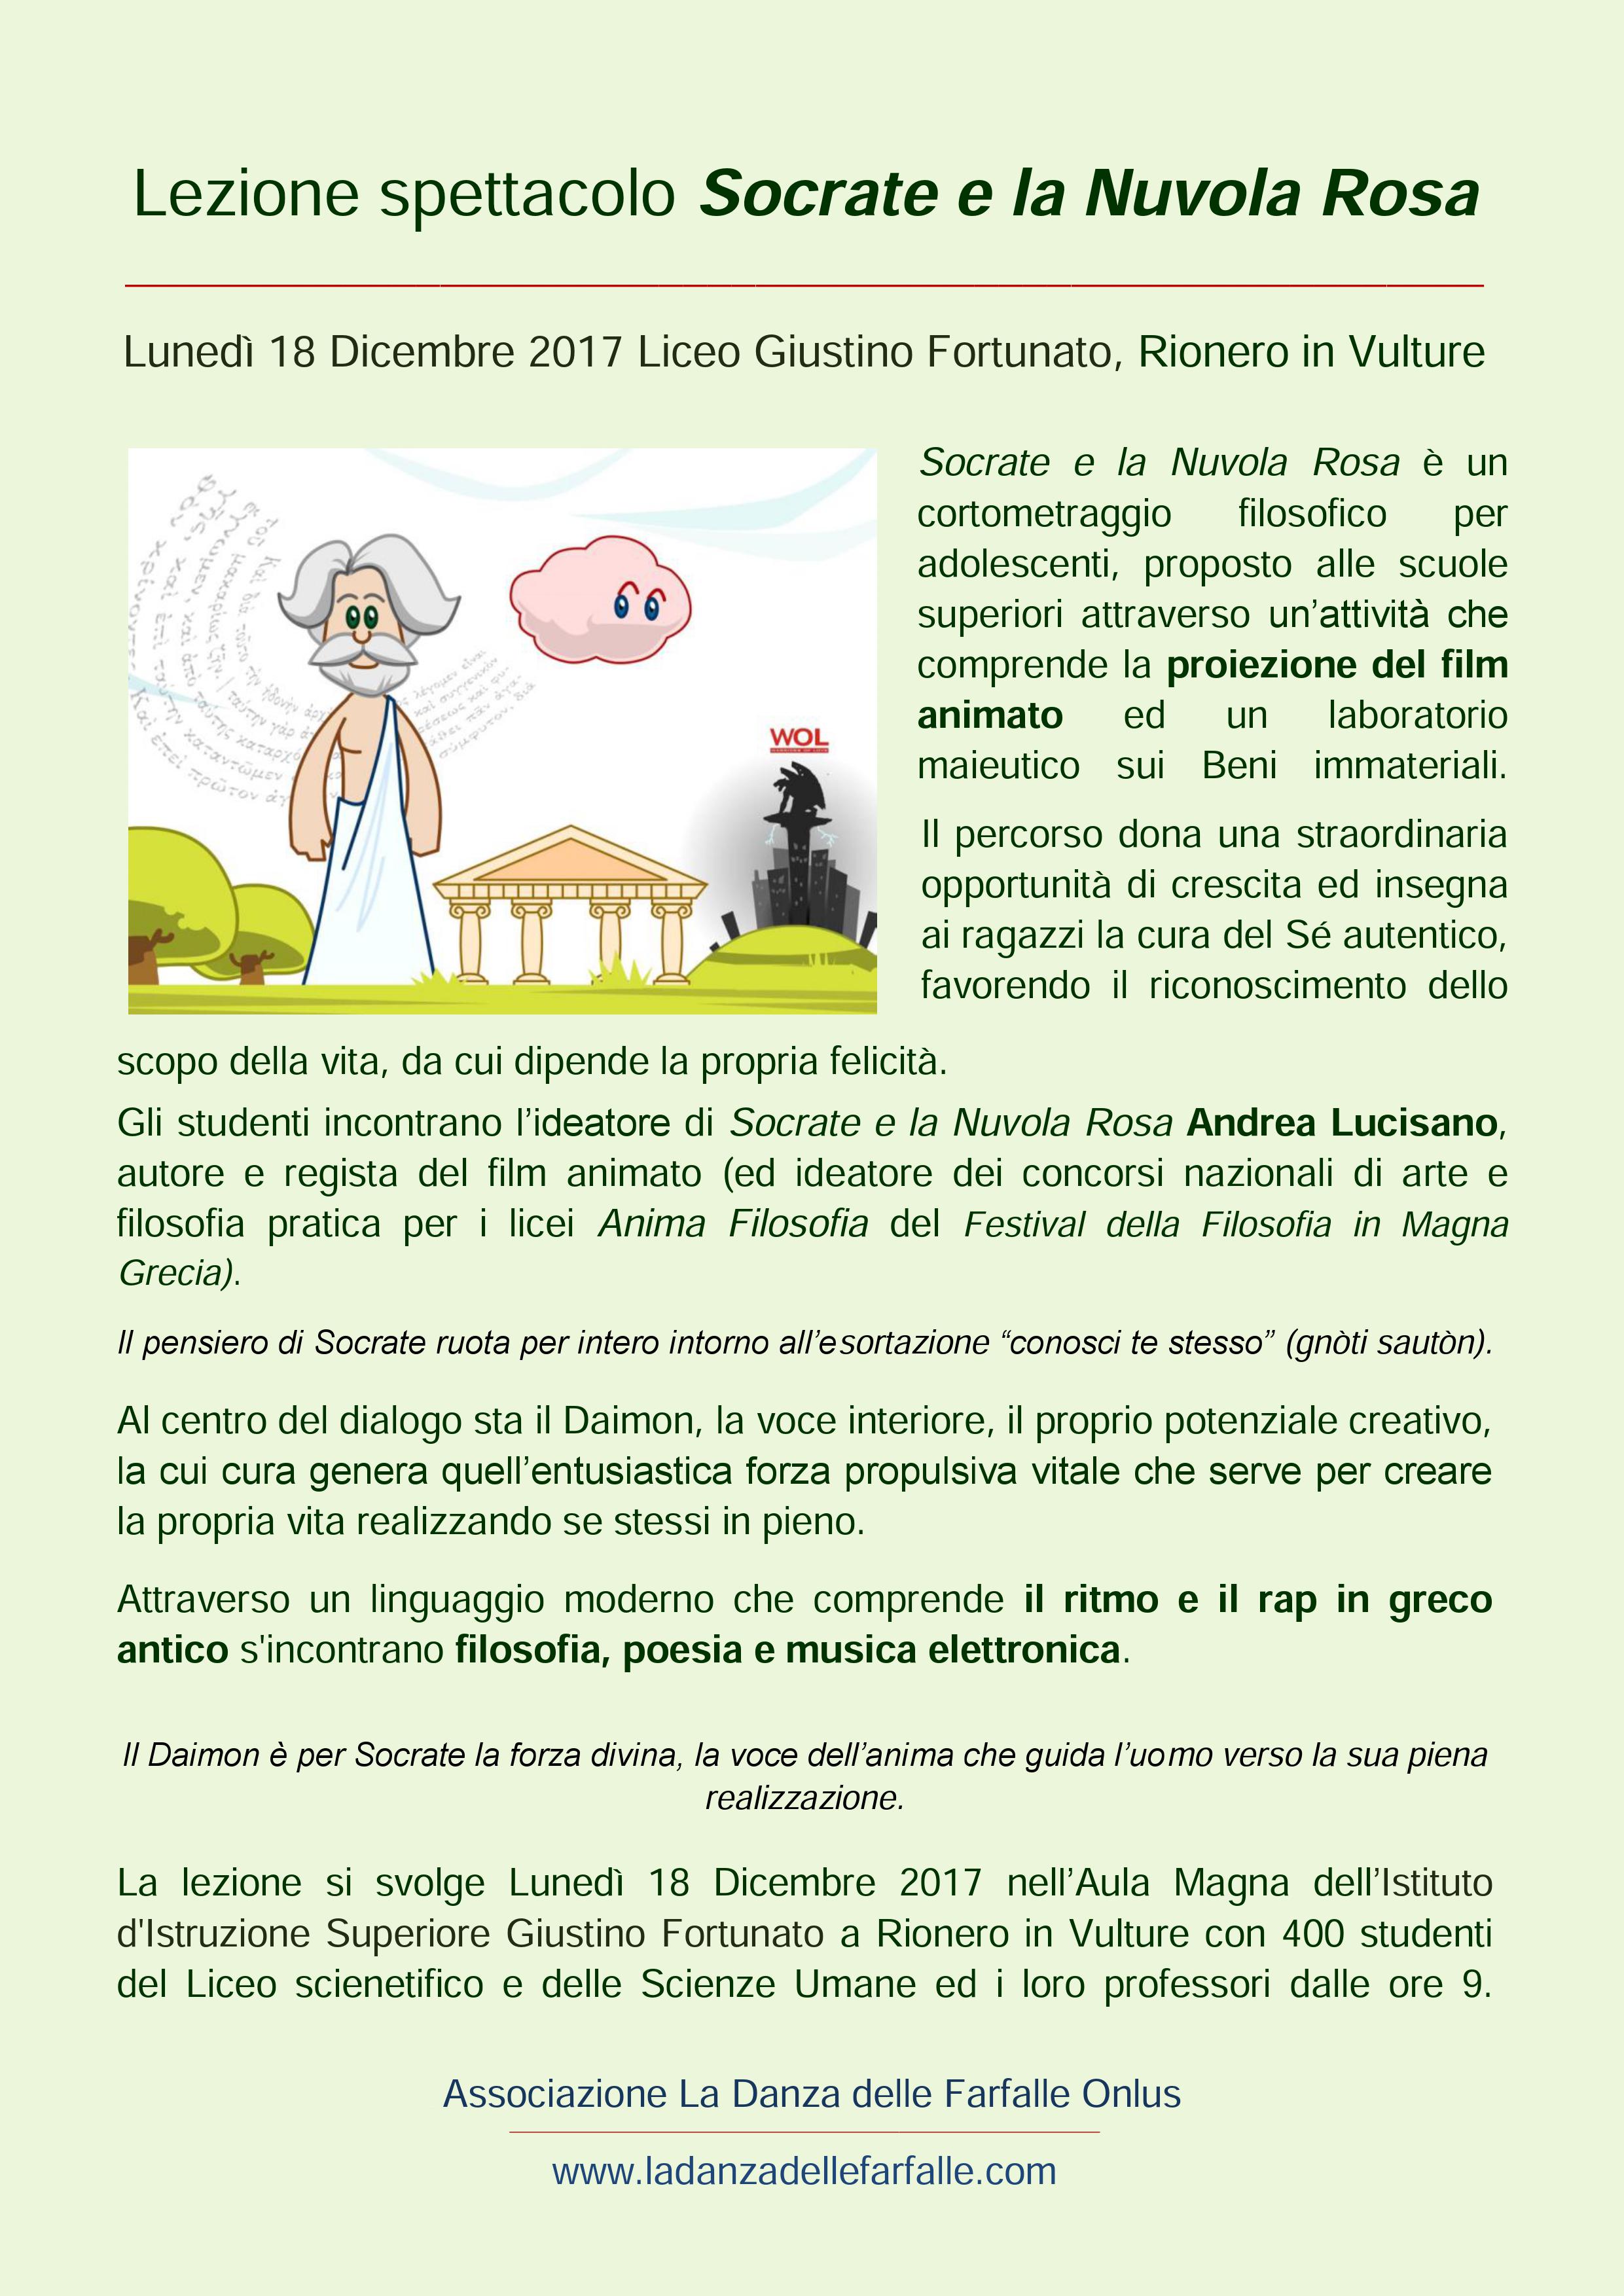 Socrate e la Nuvola Rosa Laboratorio di Filosofia pratica comunicato stampa Liceo Fortunato Rionero